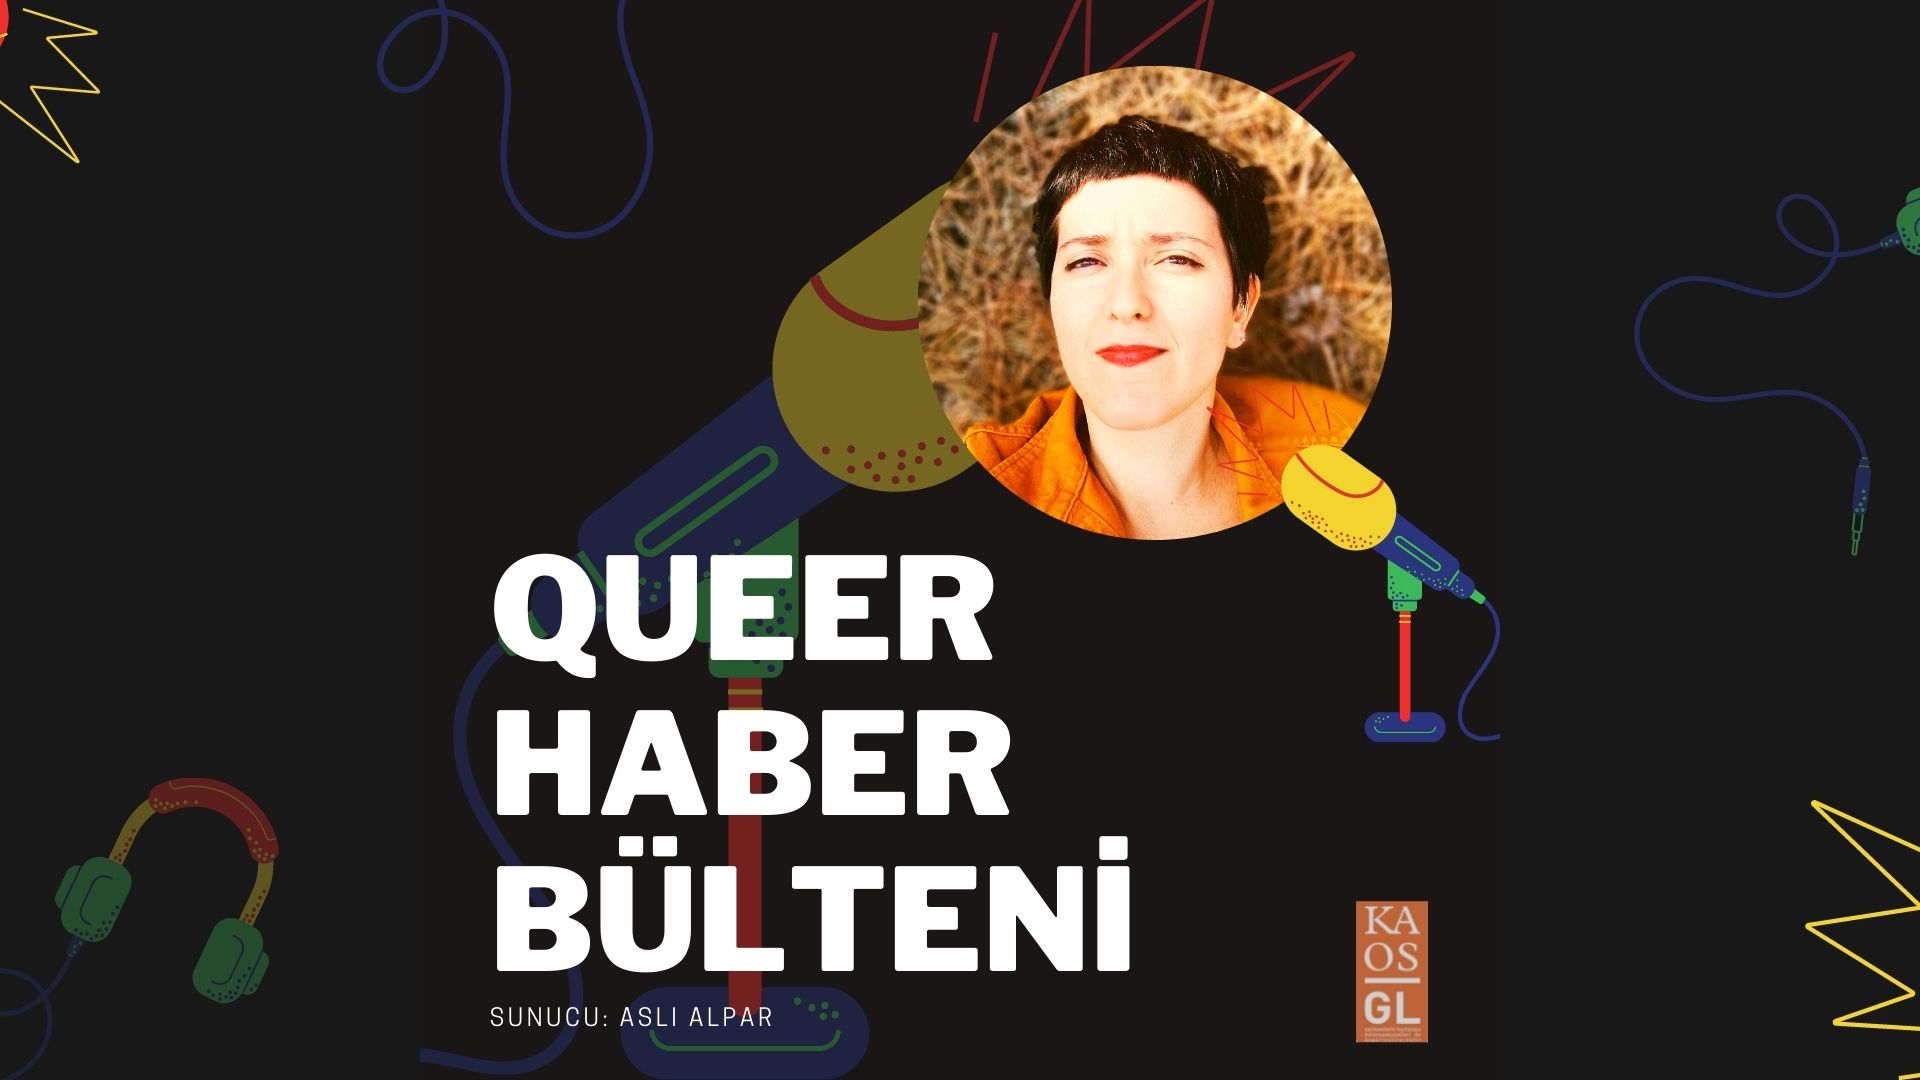 Podcast: Aralık ayı Queer Haber Bülteni | Kaos GL - LGBTİ+ Haber Portalı Haber